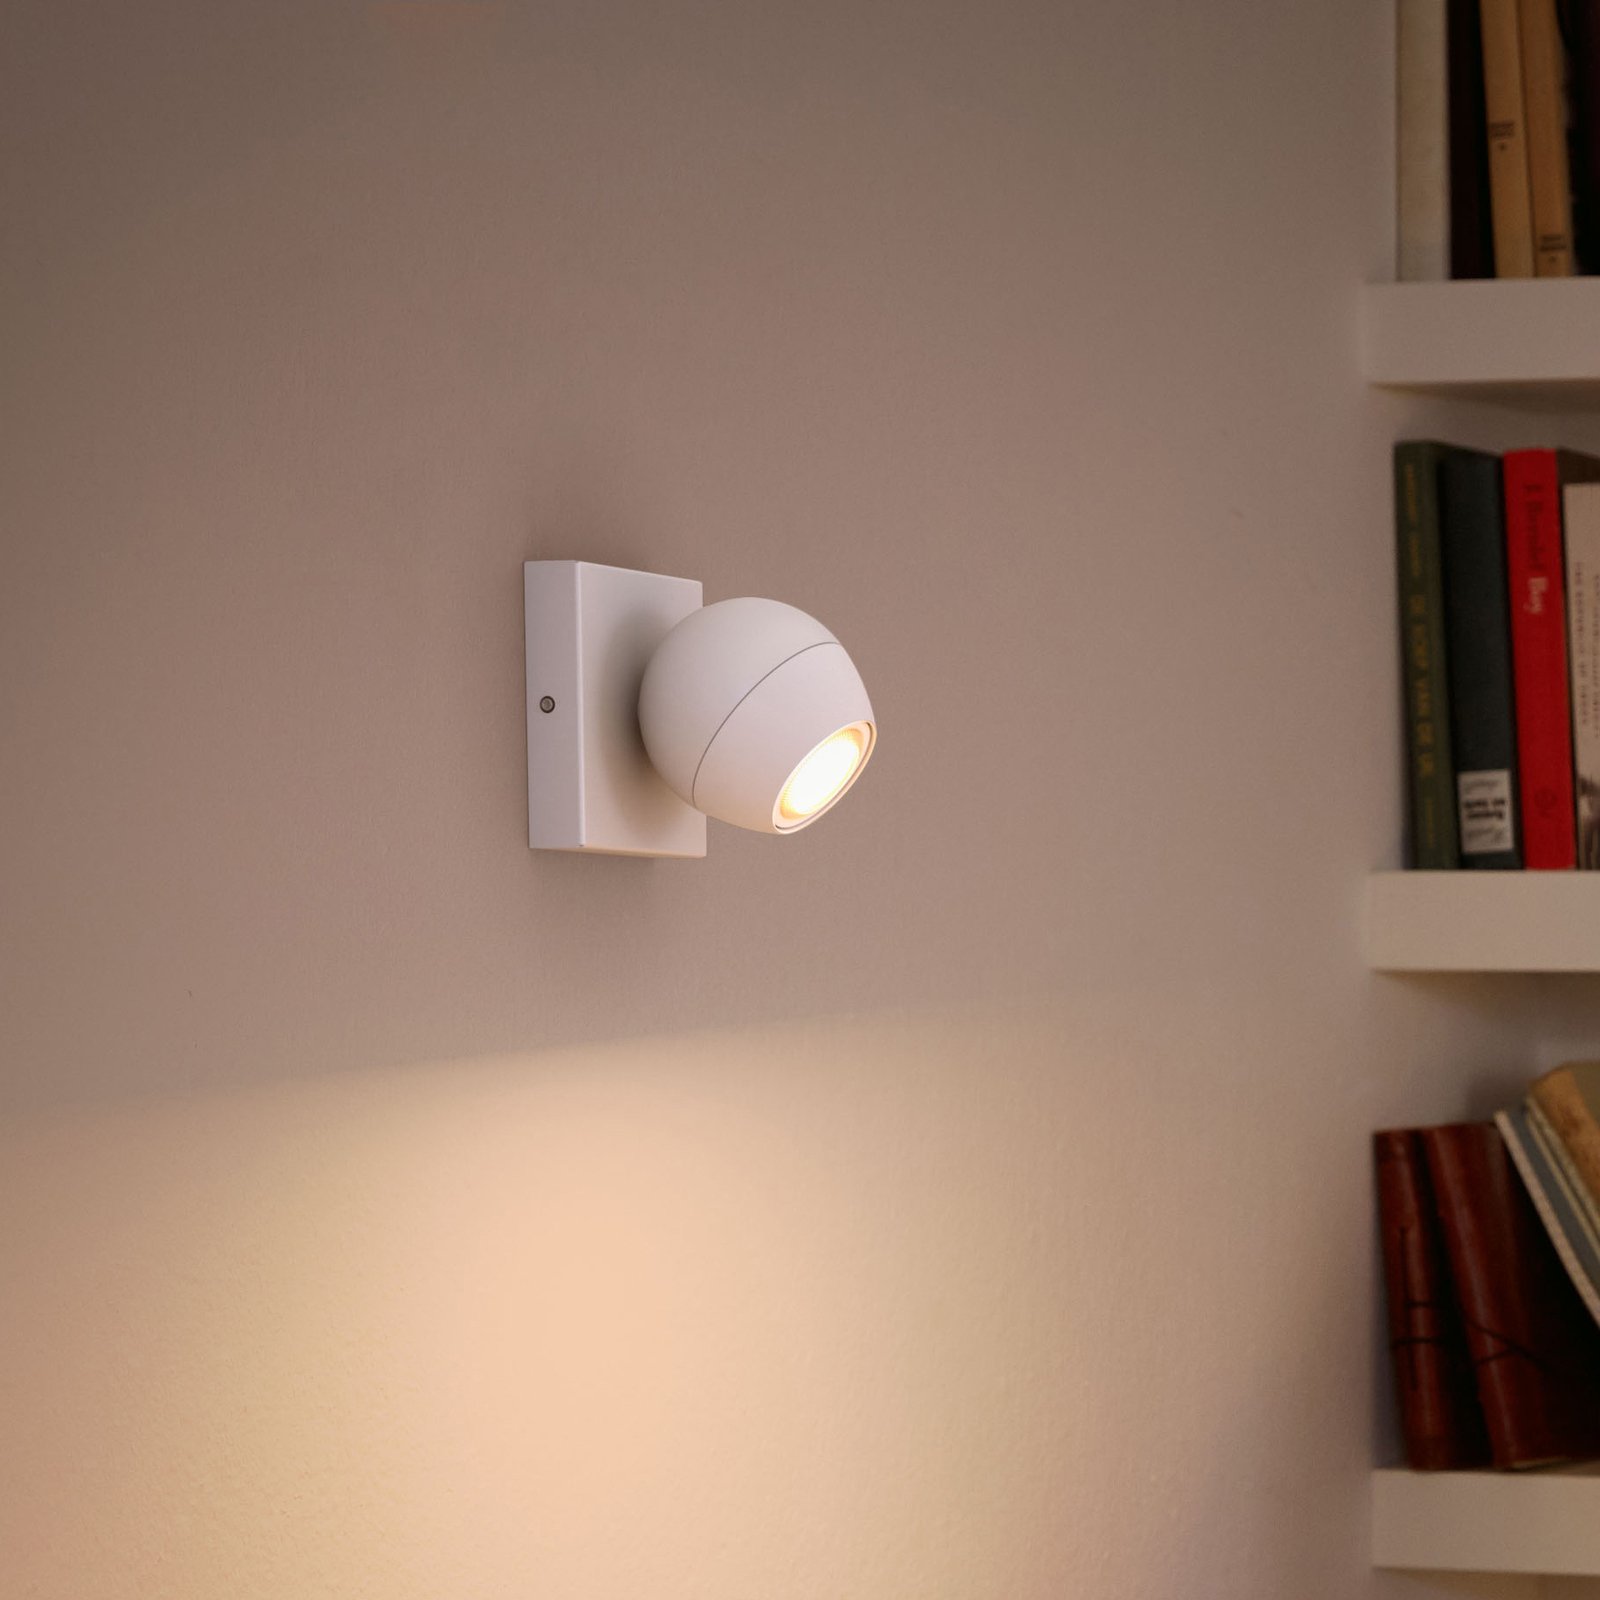 Philips Hue Buckram LED spot, white, dimmer switch